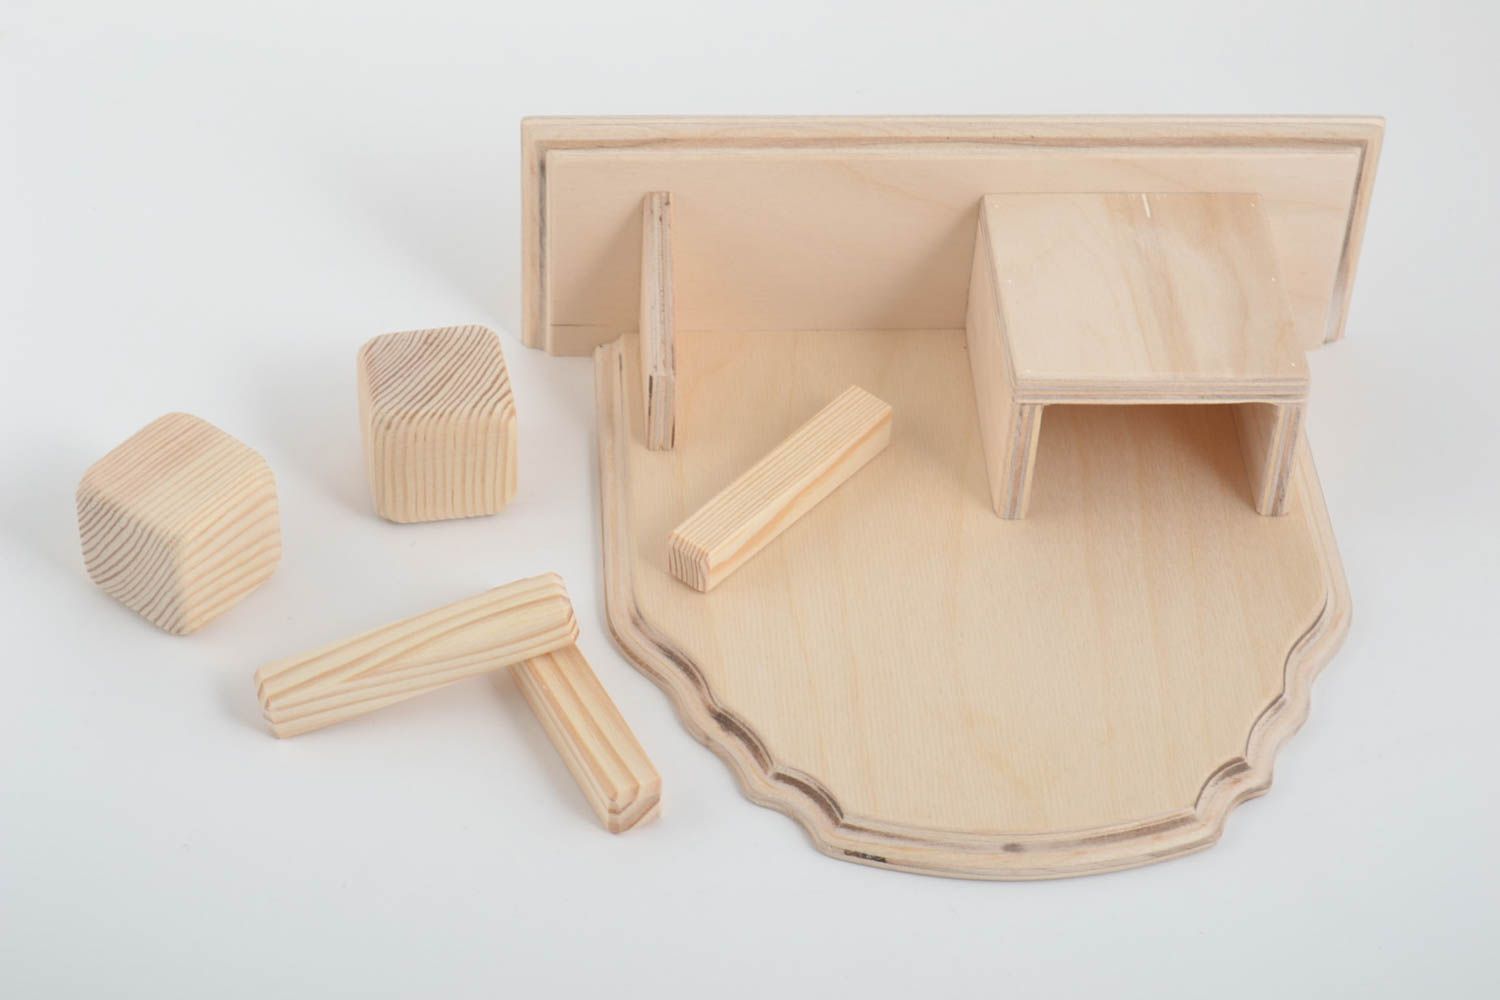 Unusual handmade wooden blank organizer wooden craft art supplies gift ideas photo 5